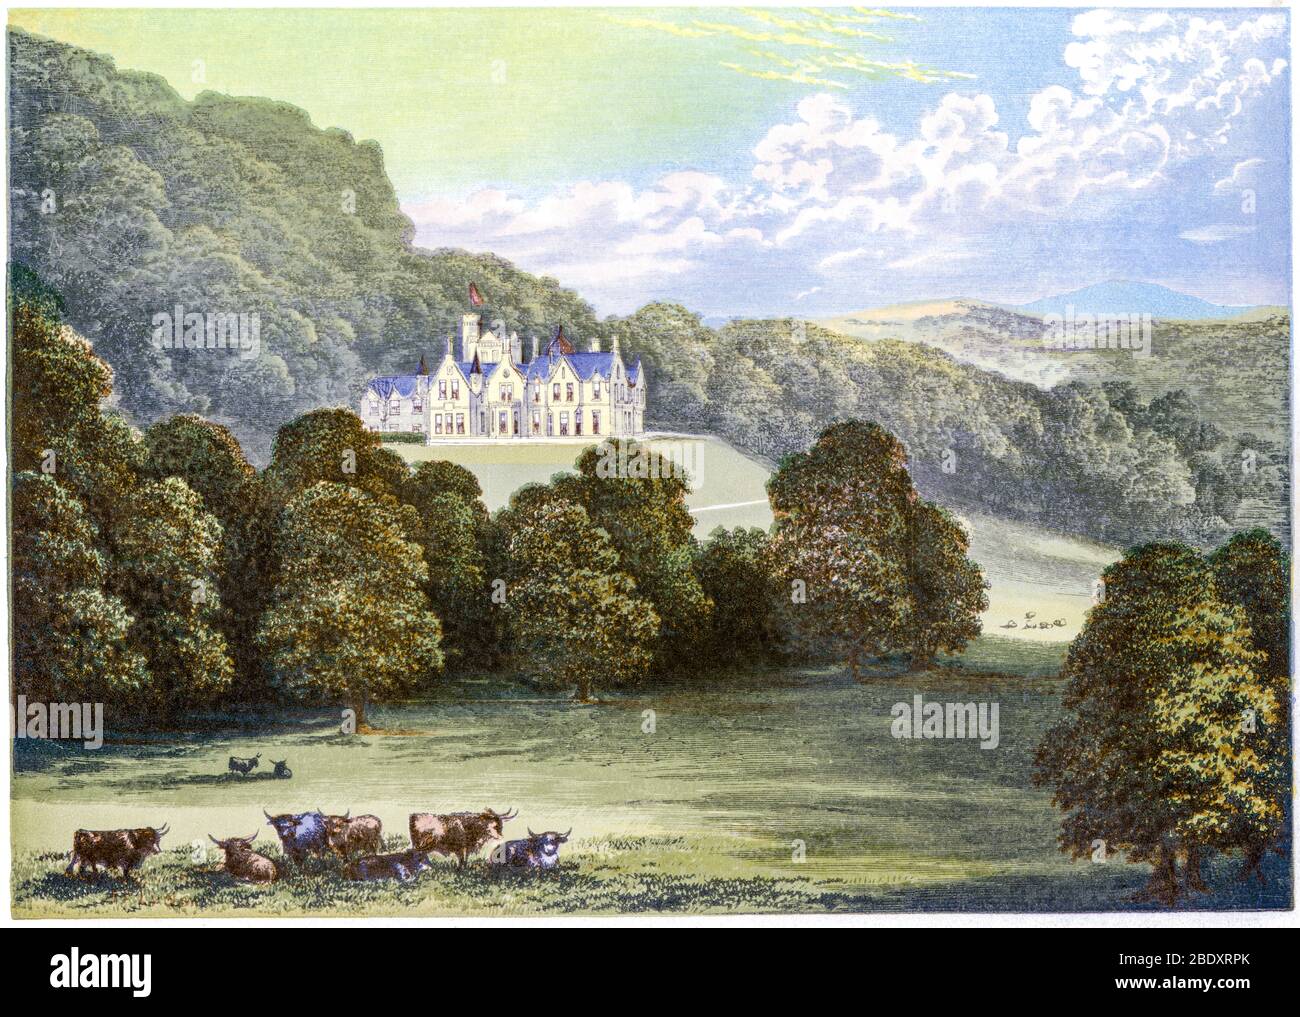 Une illustration colorée de Philiphhaugh près de Selkirk, en Écosse, a été numérisée en haute résolution à partir d'un livre imprimé en 1870. Cru libre de droits d'auteur. Banque D'Images